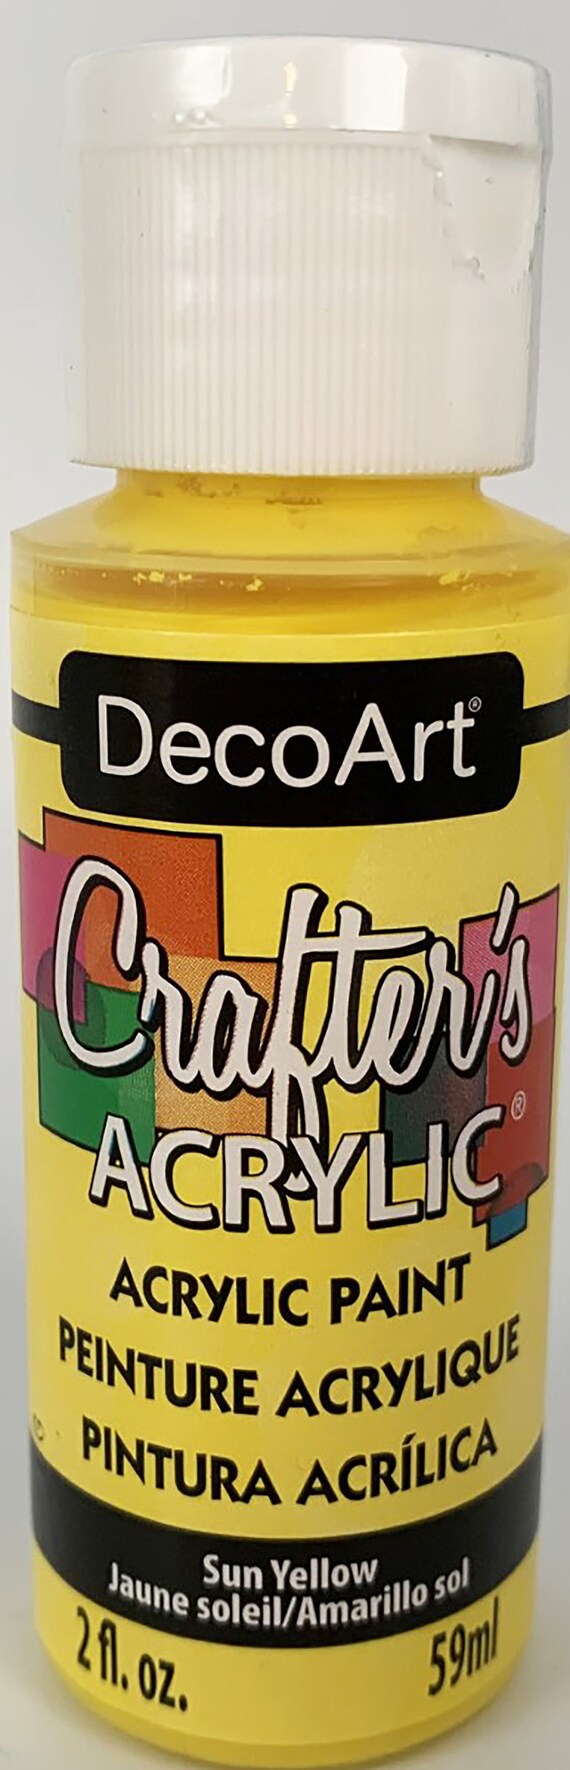 pintura-deco-craft-opiniones-productos